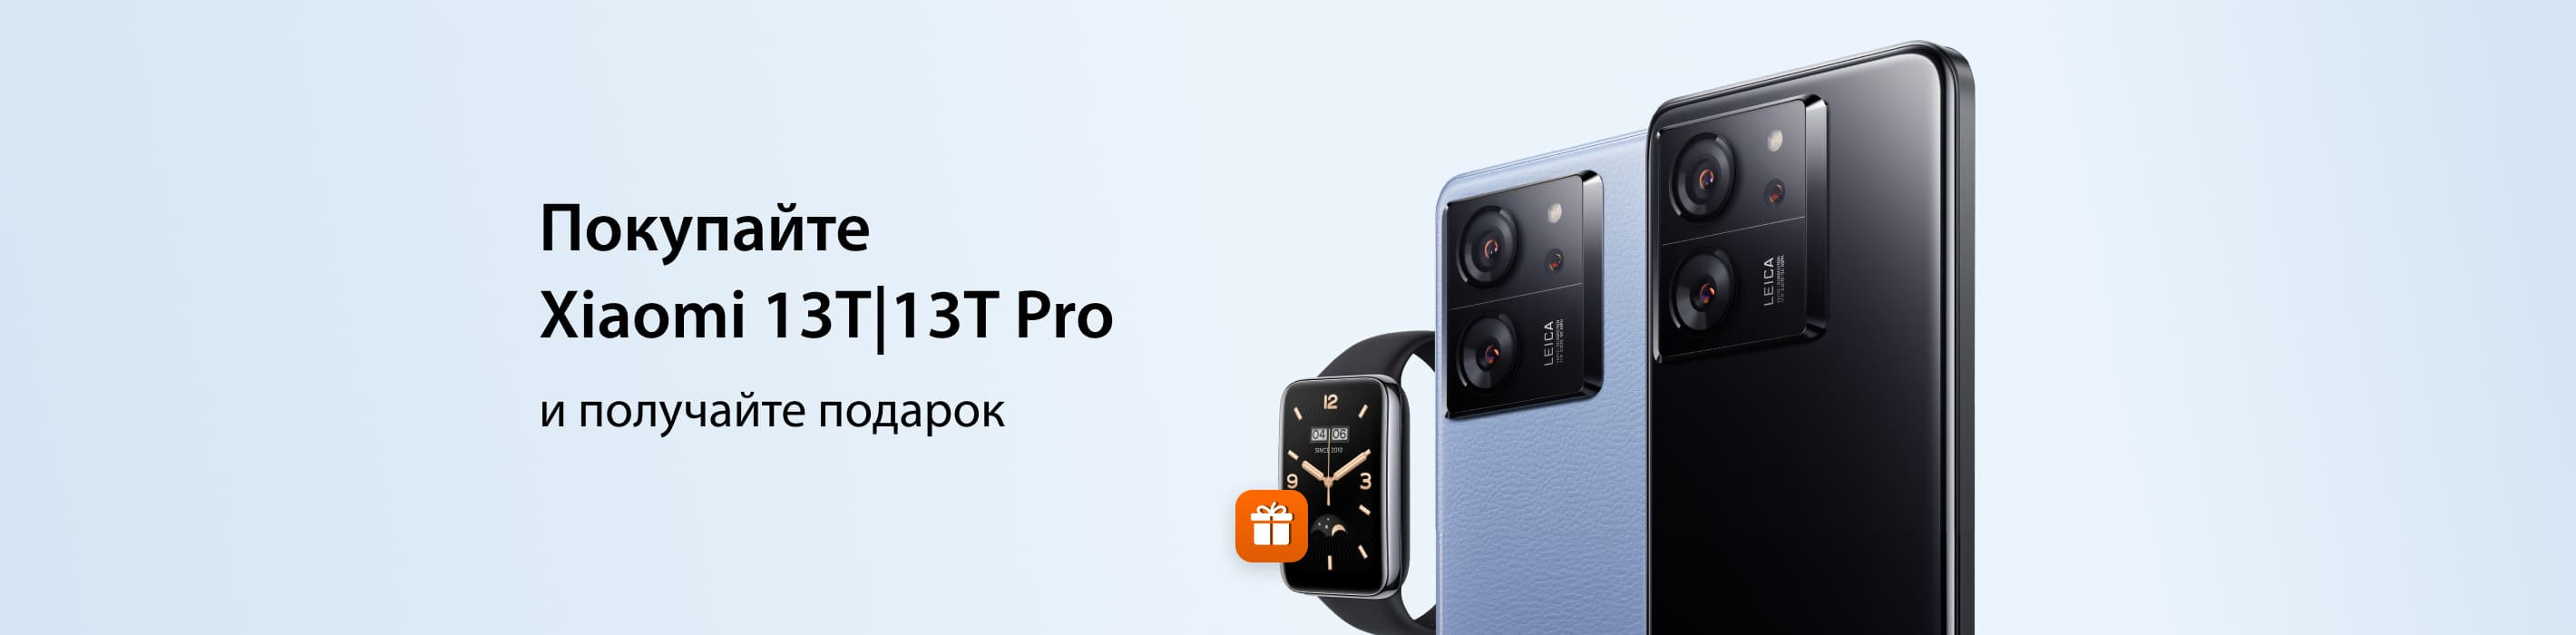 Получайте фитнес-браслет при покупке Xiaomi 13T или 13T Pro